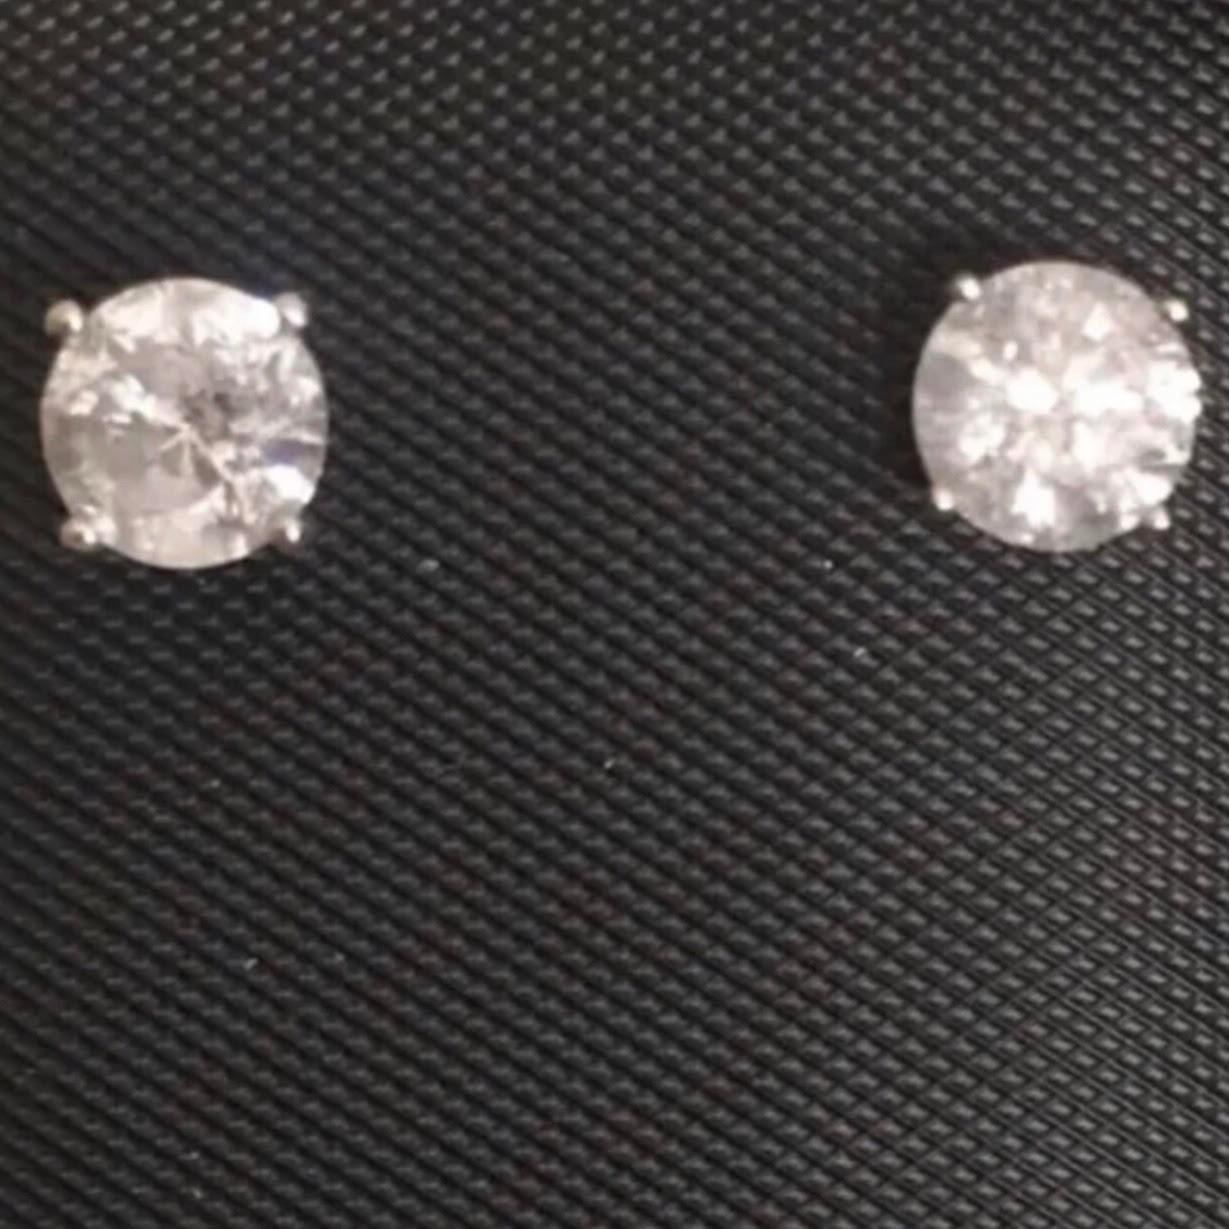 Boucles d'oreilles classiques en or blanc 14 carats et diamant solitaire de 1 carat. Une paire de diamants ronds et brillants d'un poids approximatif de 1,02 carat sont sertis dans ces clous d'oreilles en forme de panier de 14 carats.

Les boucles